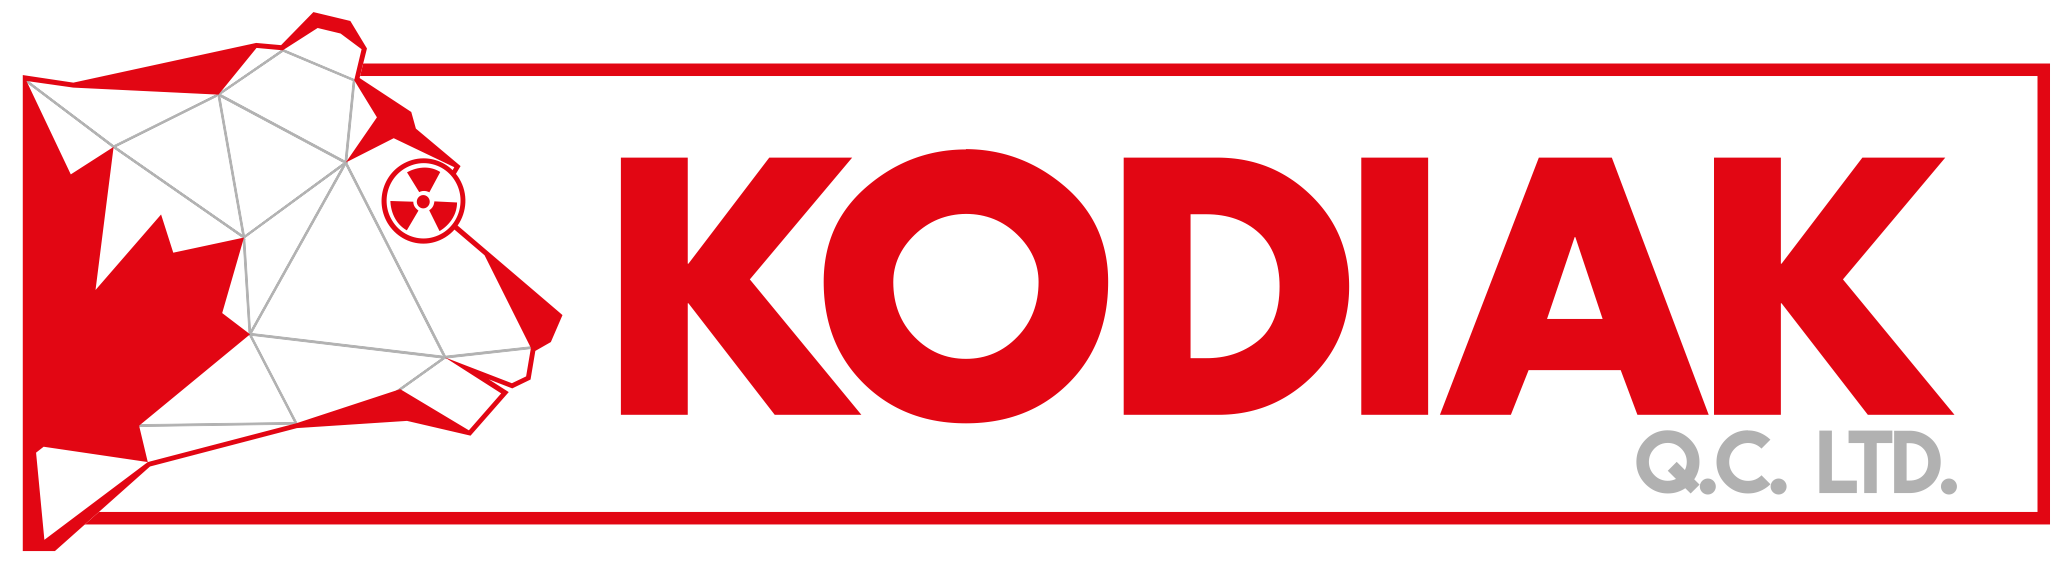 Kodiak Q.C. Ltd.